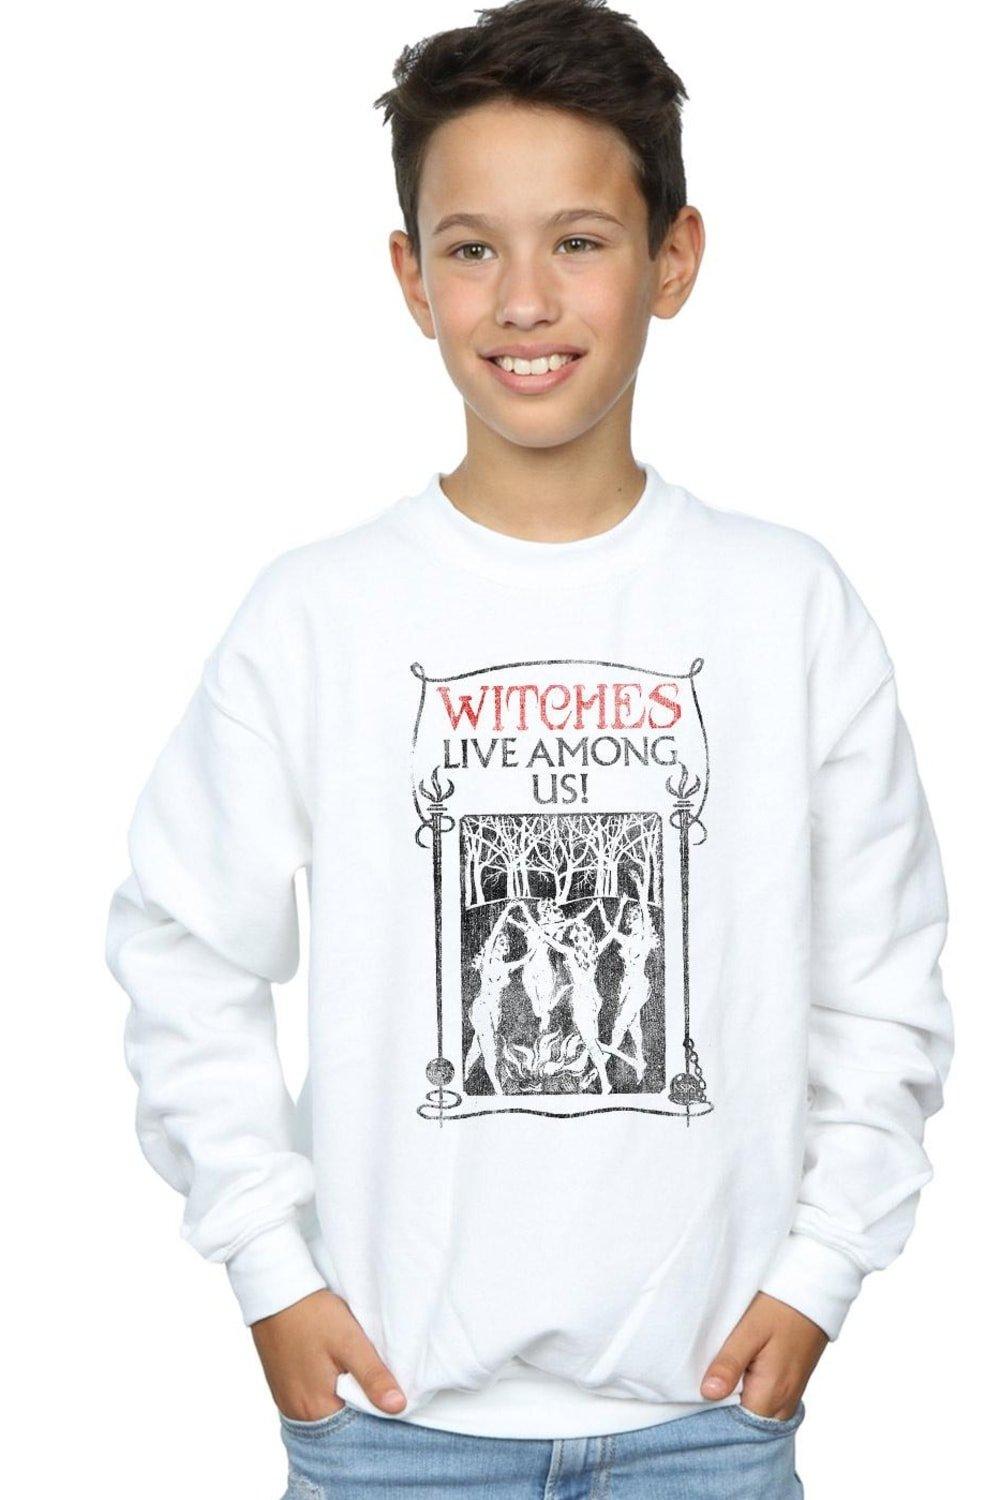 Witches Live Among Us Sweatshirt